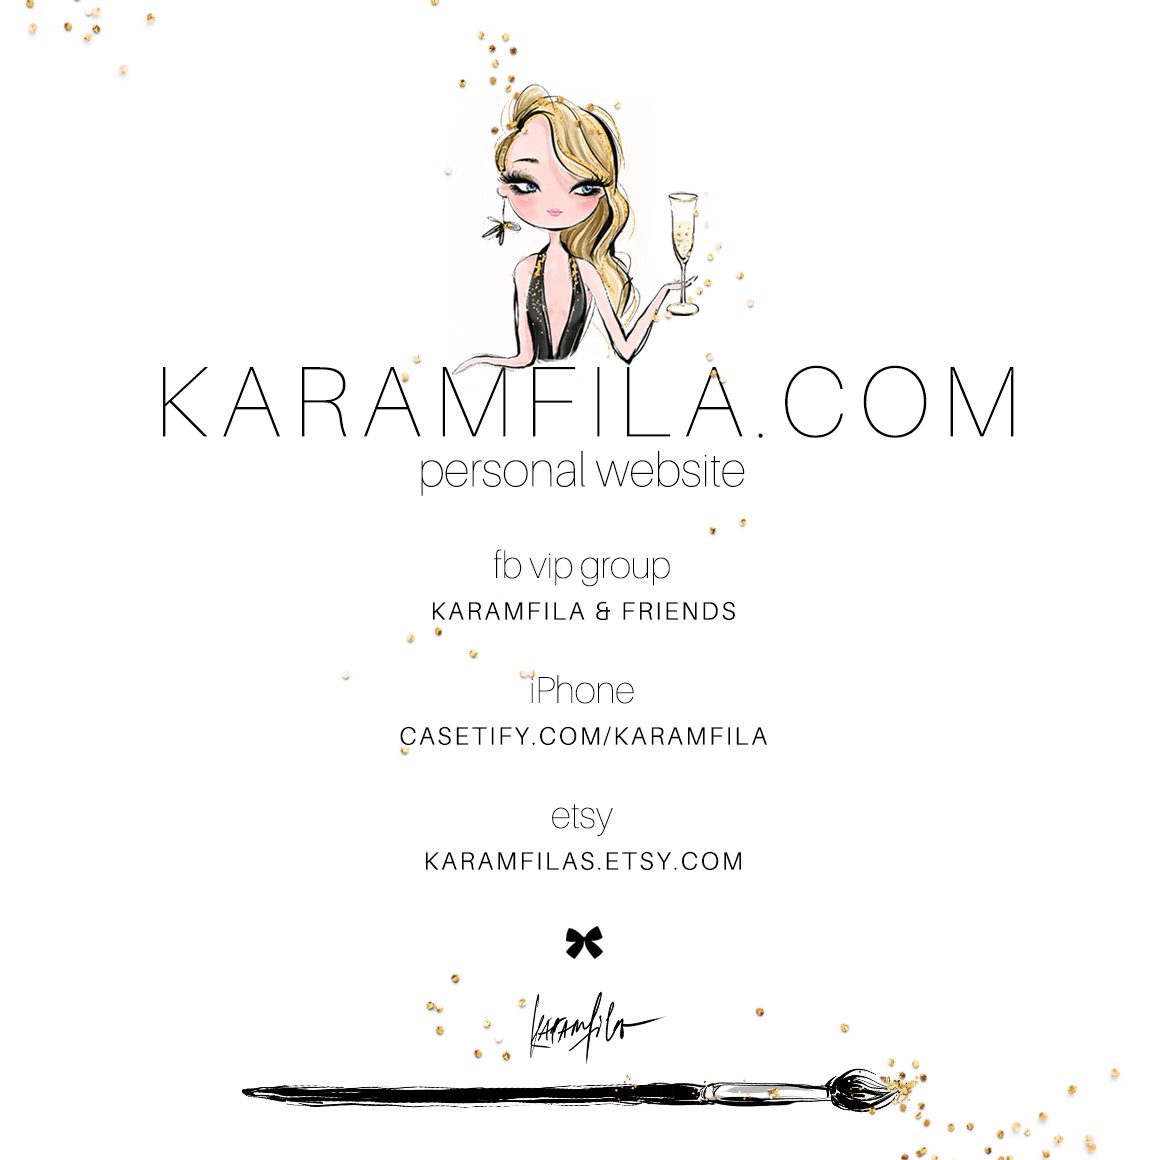 Kramfila site design.